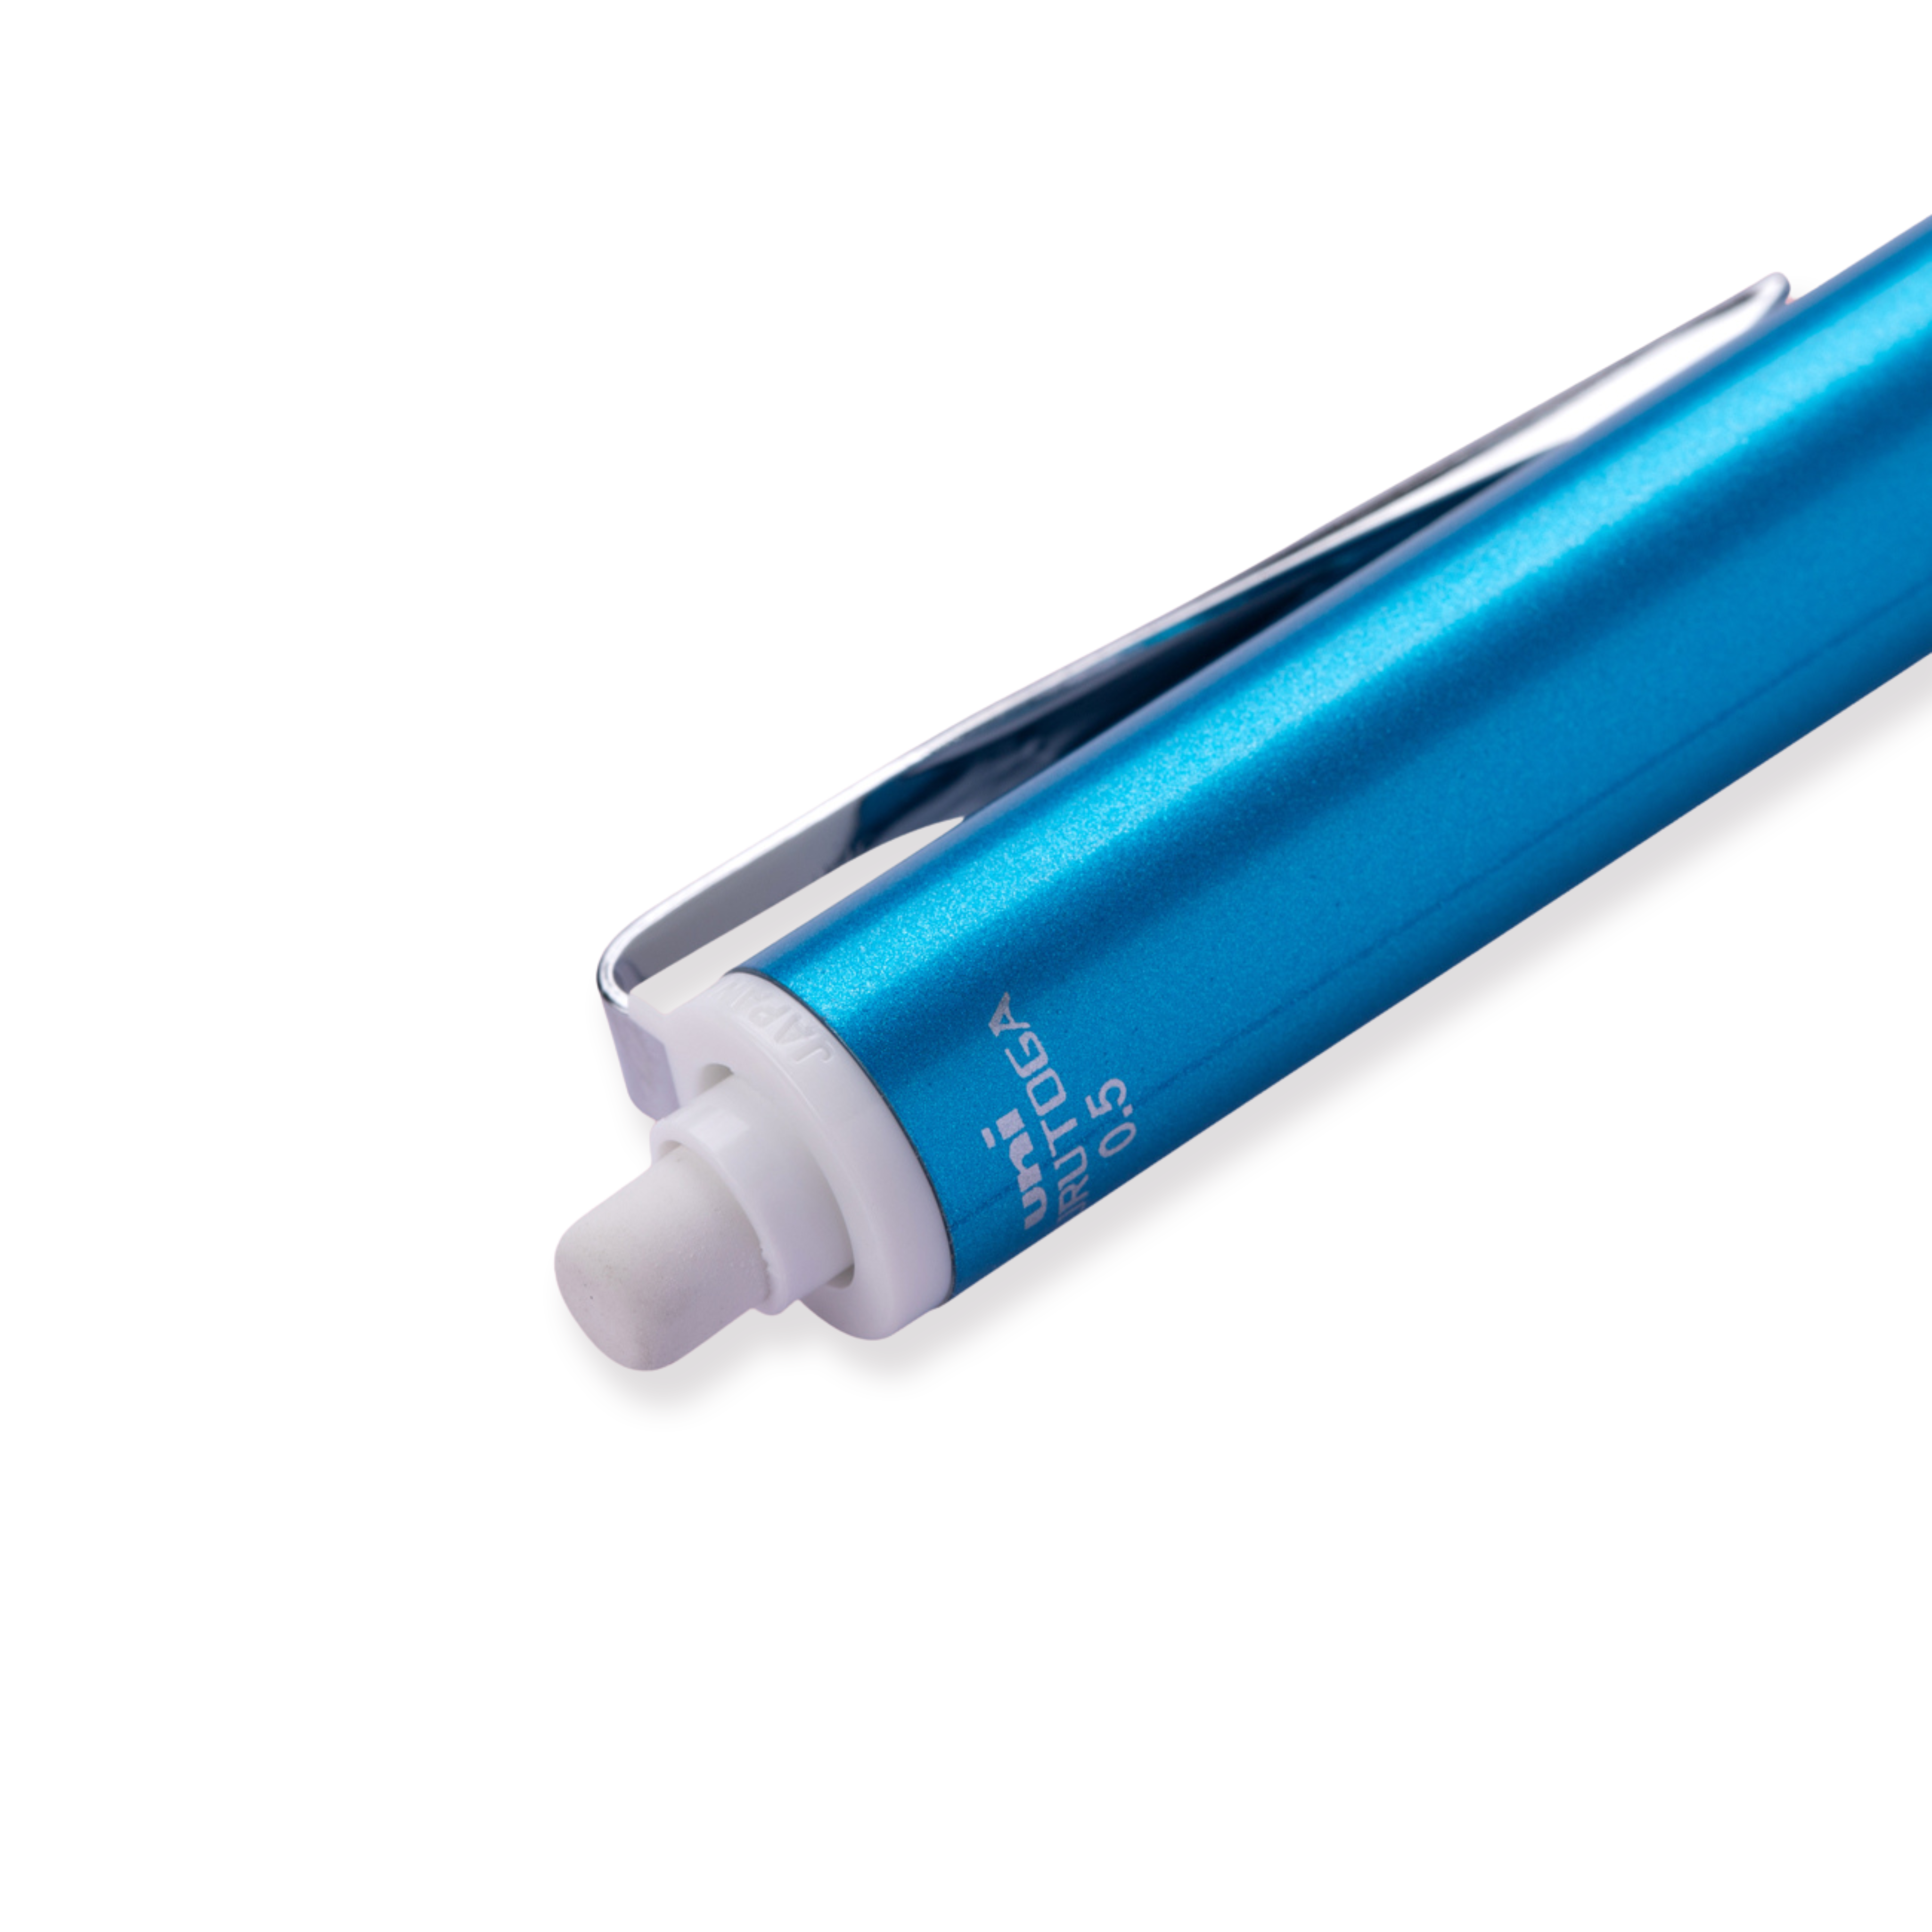 Uni Kuru Toga Mechanical Pencil 0.5 mm: Auto Rotating Leads - Sky Blue